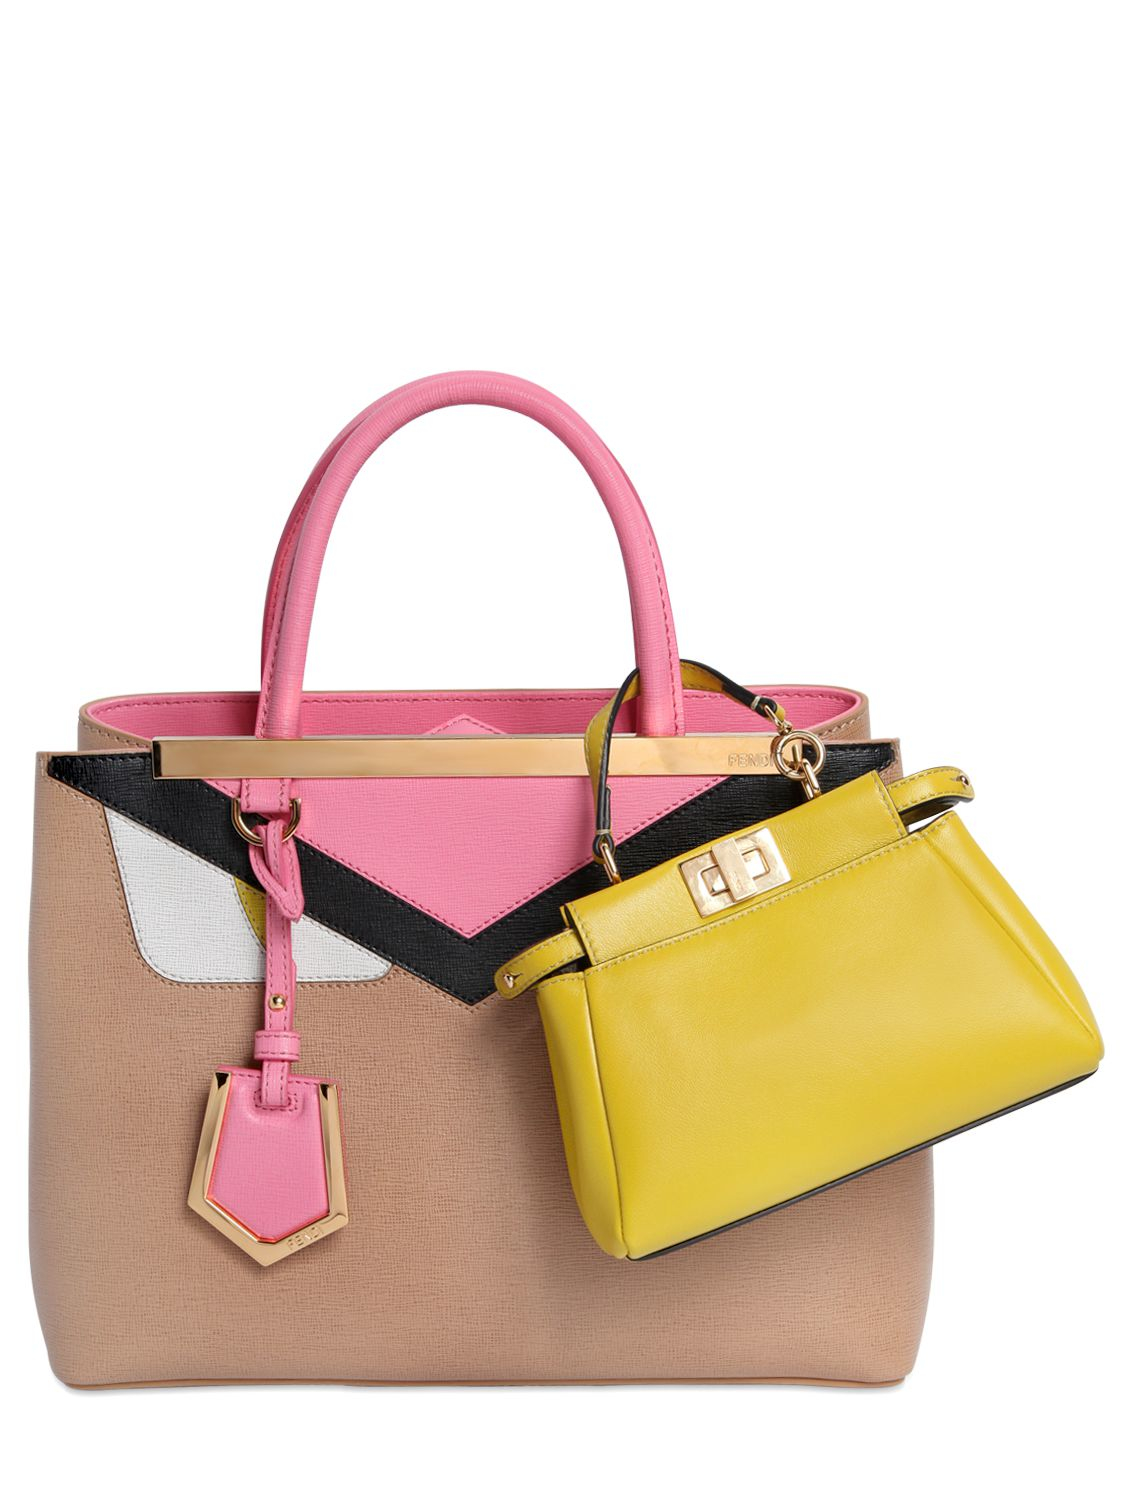 Fendi Micro Peekaboo Nappa Leather Bag in Yellow (LIME YELLOW) | Lyst